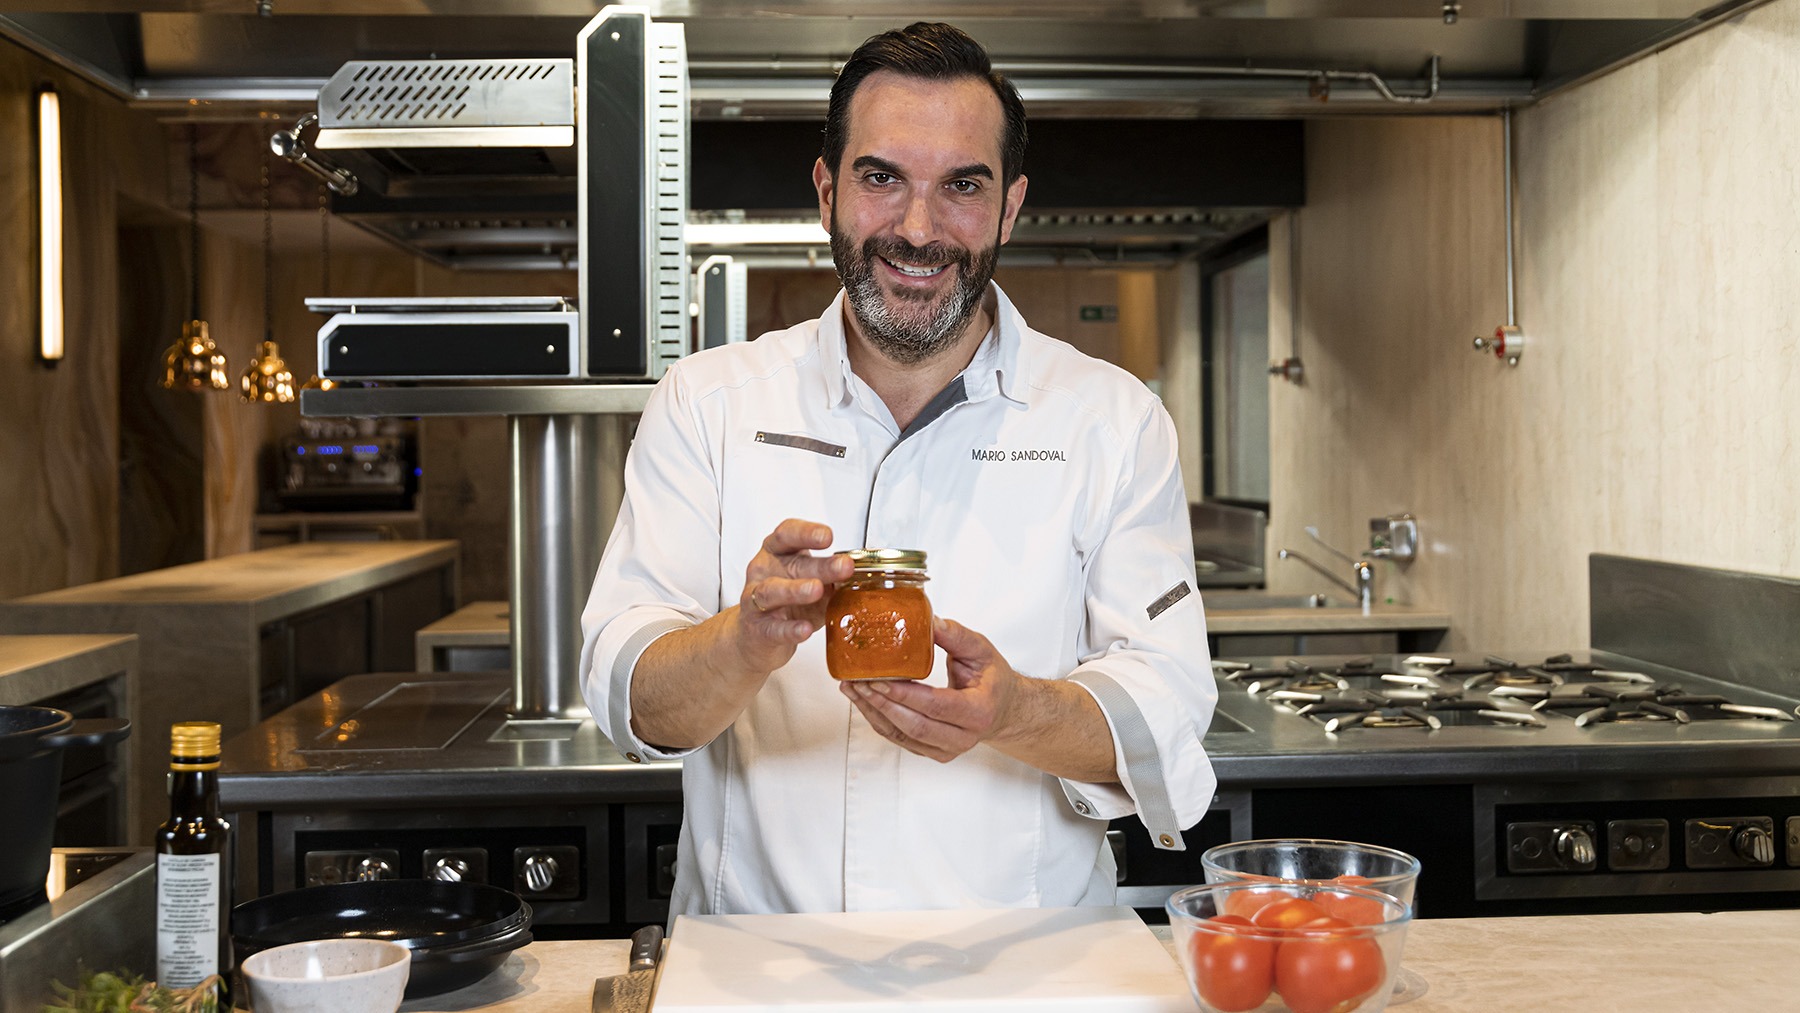 Salsa de tomate casera con el toque de Mario Sandoval